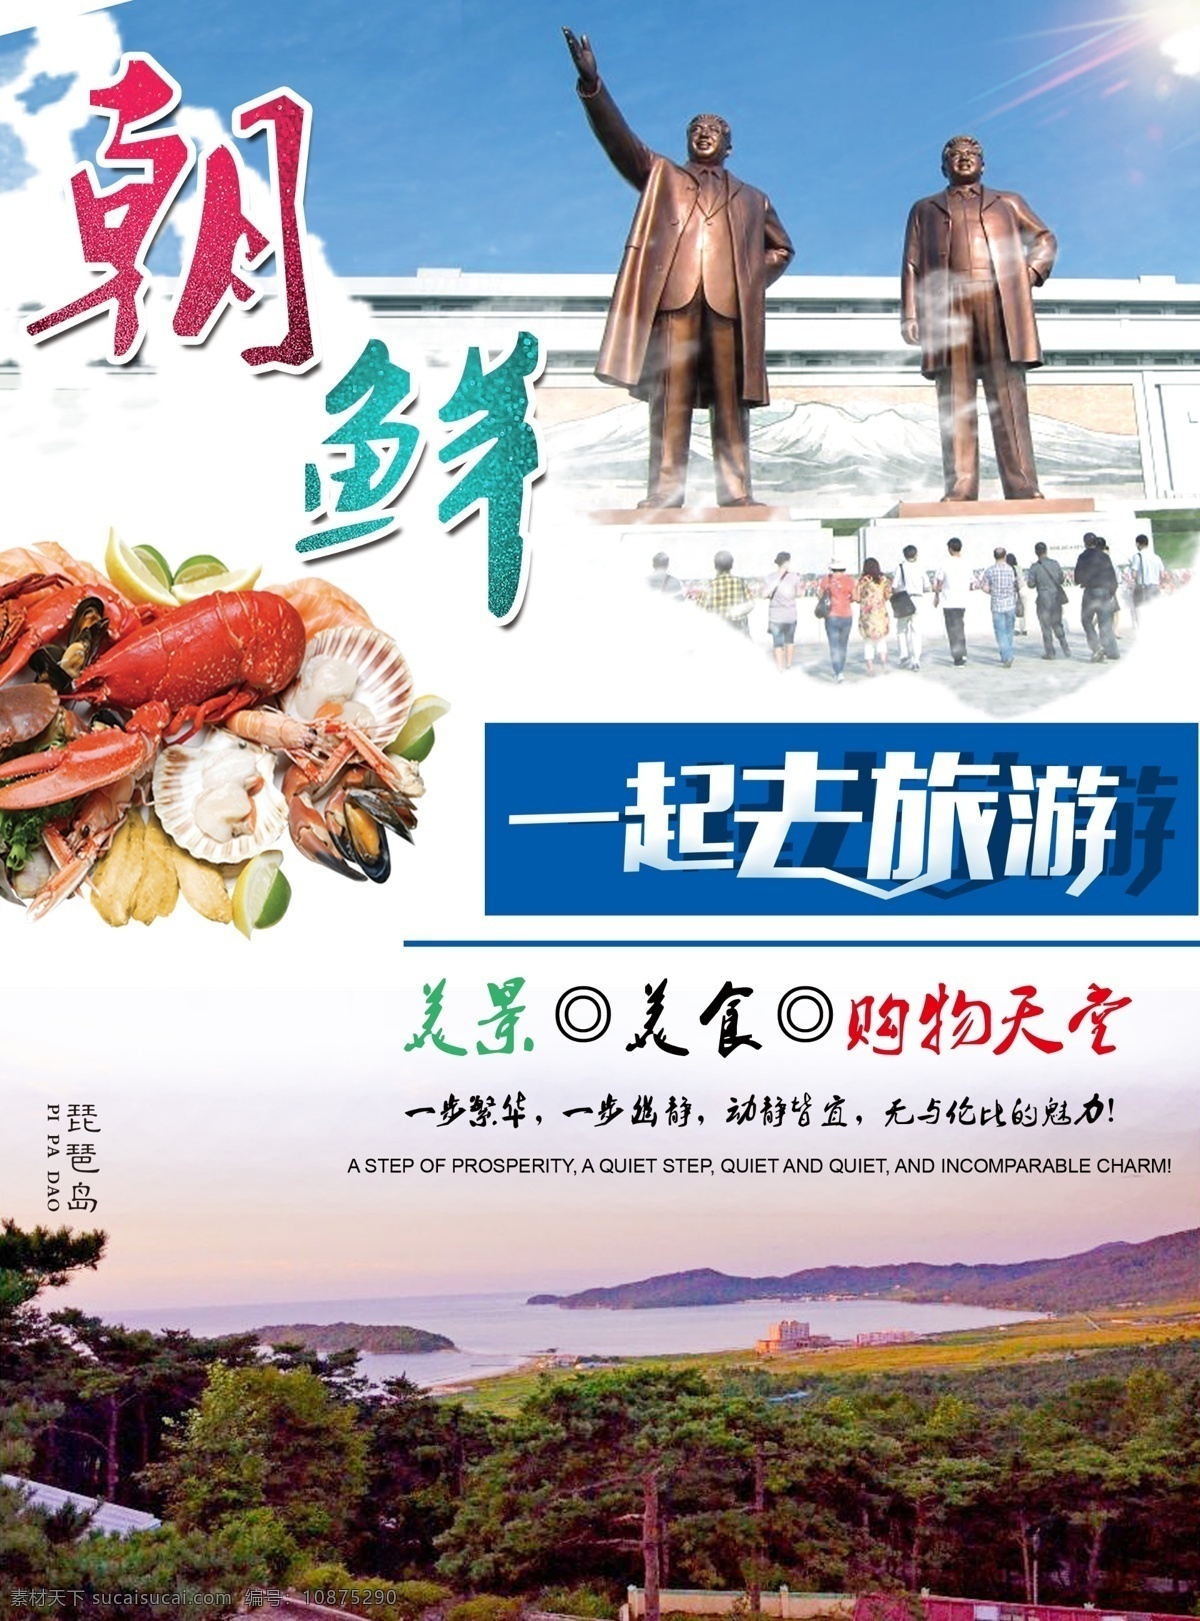 朝鲜旅游 朝鲜 韩国旅游 琵琶岛 旅游海报 一起去旅游 分层